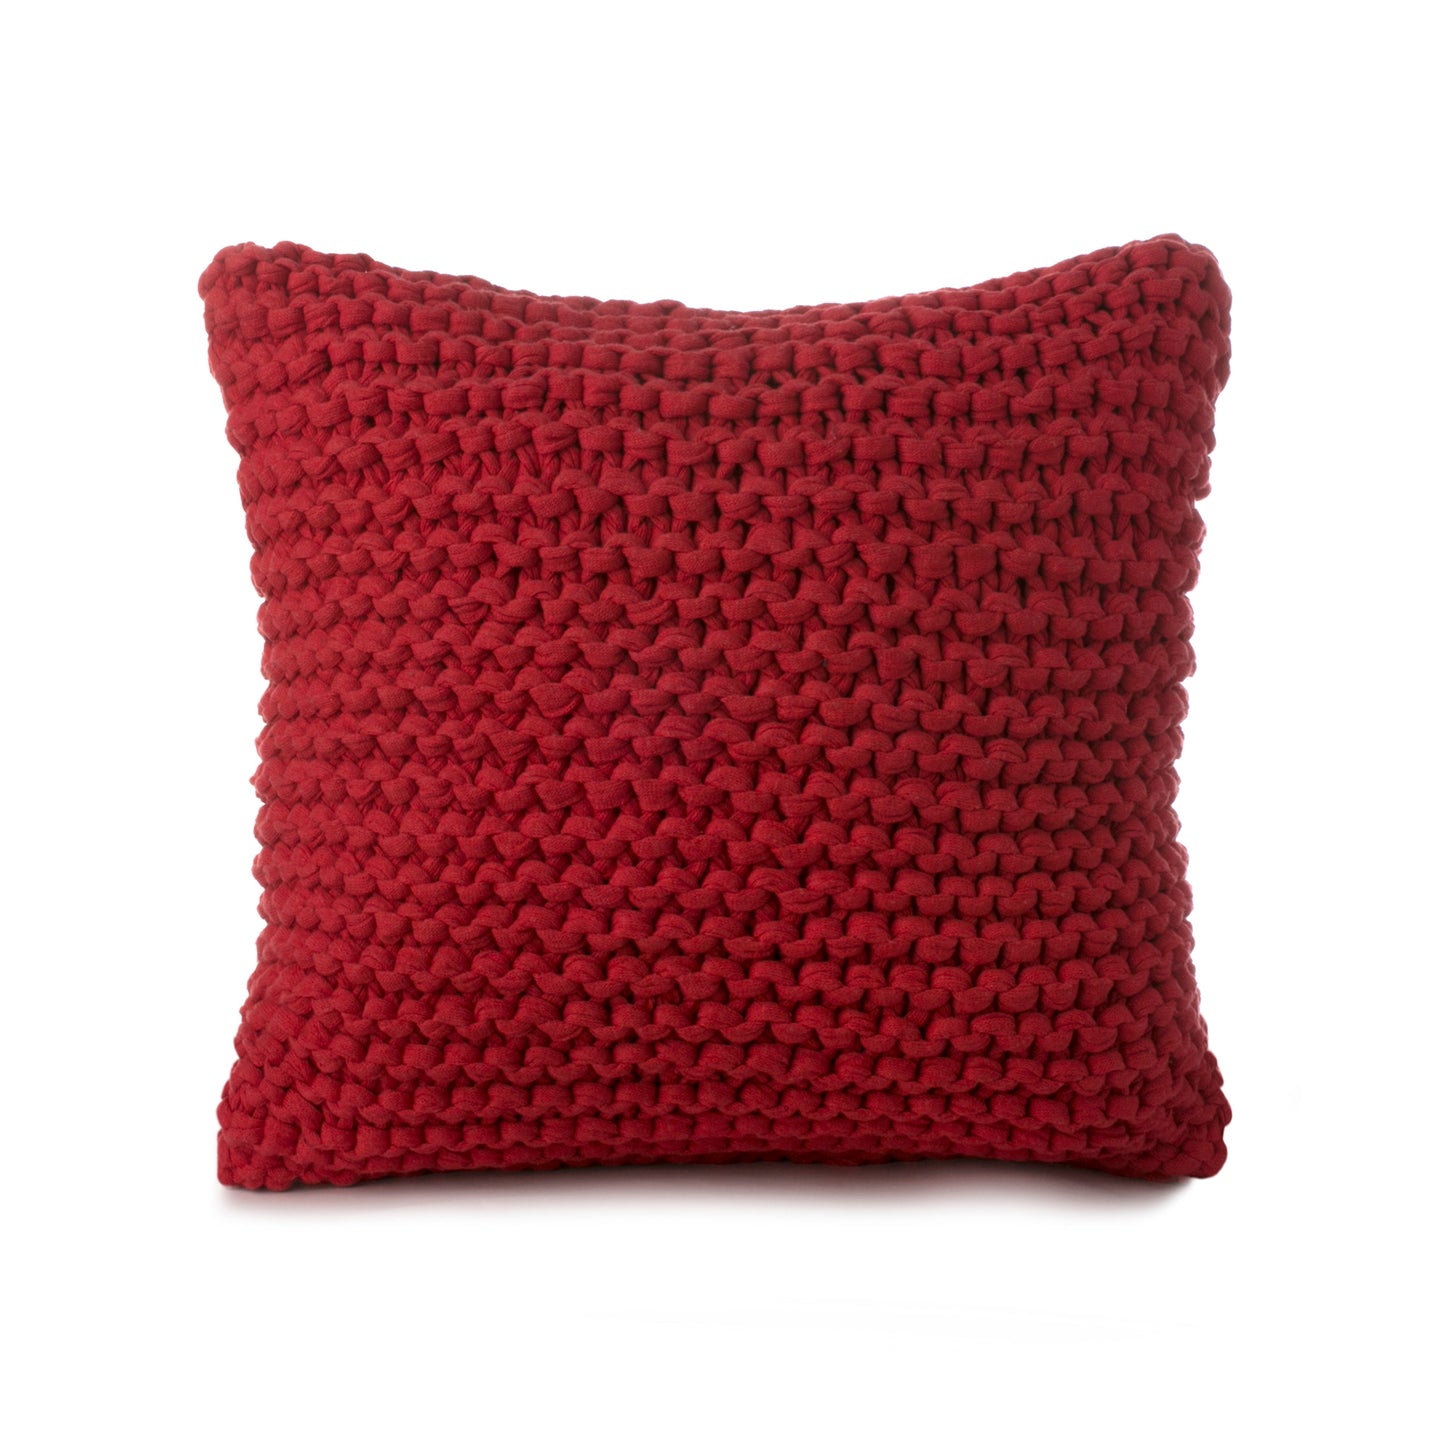 Almofada em tricô artesanal Vermelho, frente e verso, com fio 100% algodão. Fechamento com zíper, possibilitando a remoção da capa para lavagem. Dimensões: Altura - 50cm; Largura - 50cm. 